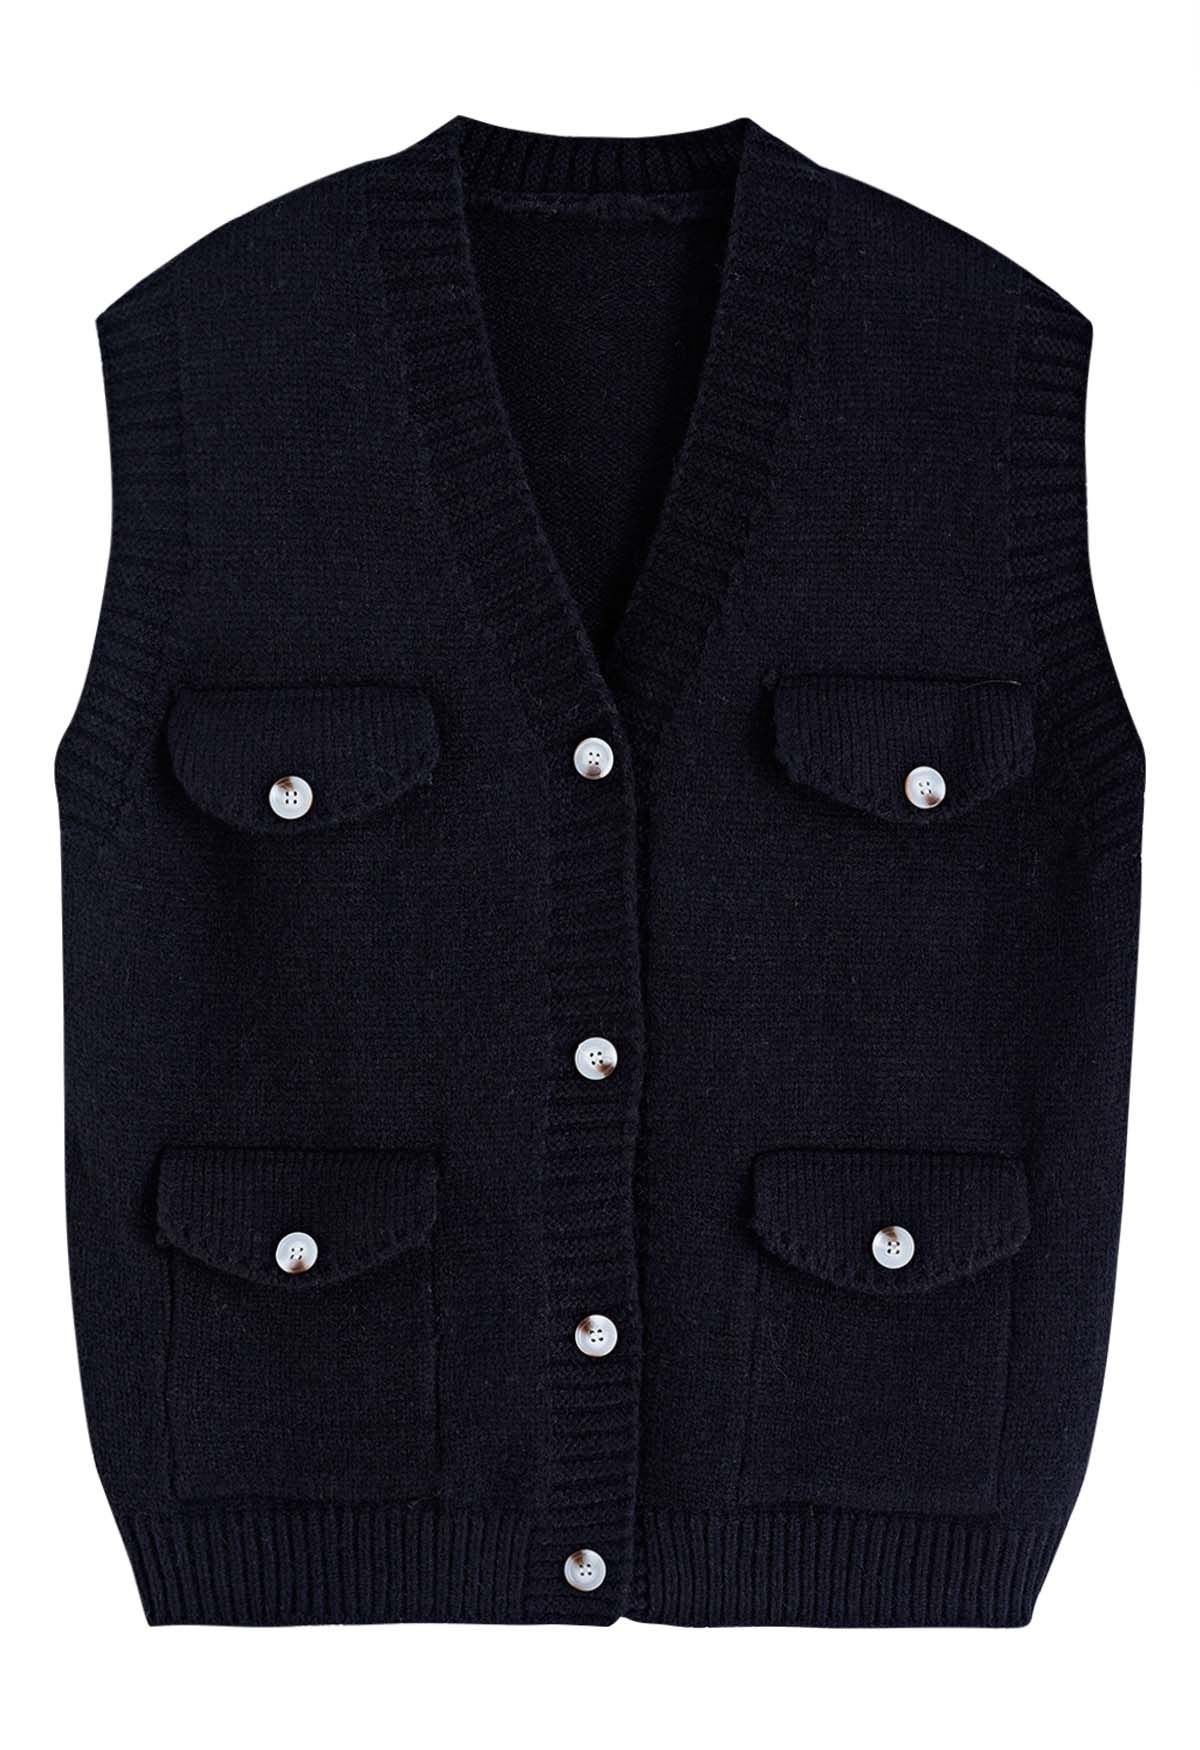 Gilet en tricot boutonné avec poche à rabat en noir